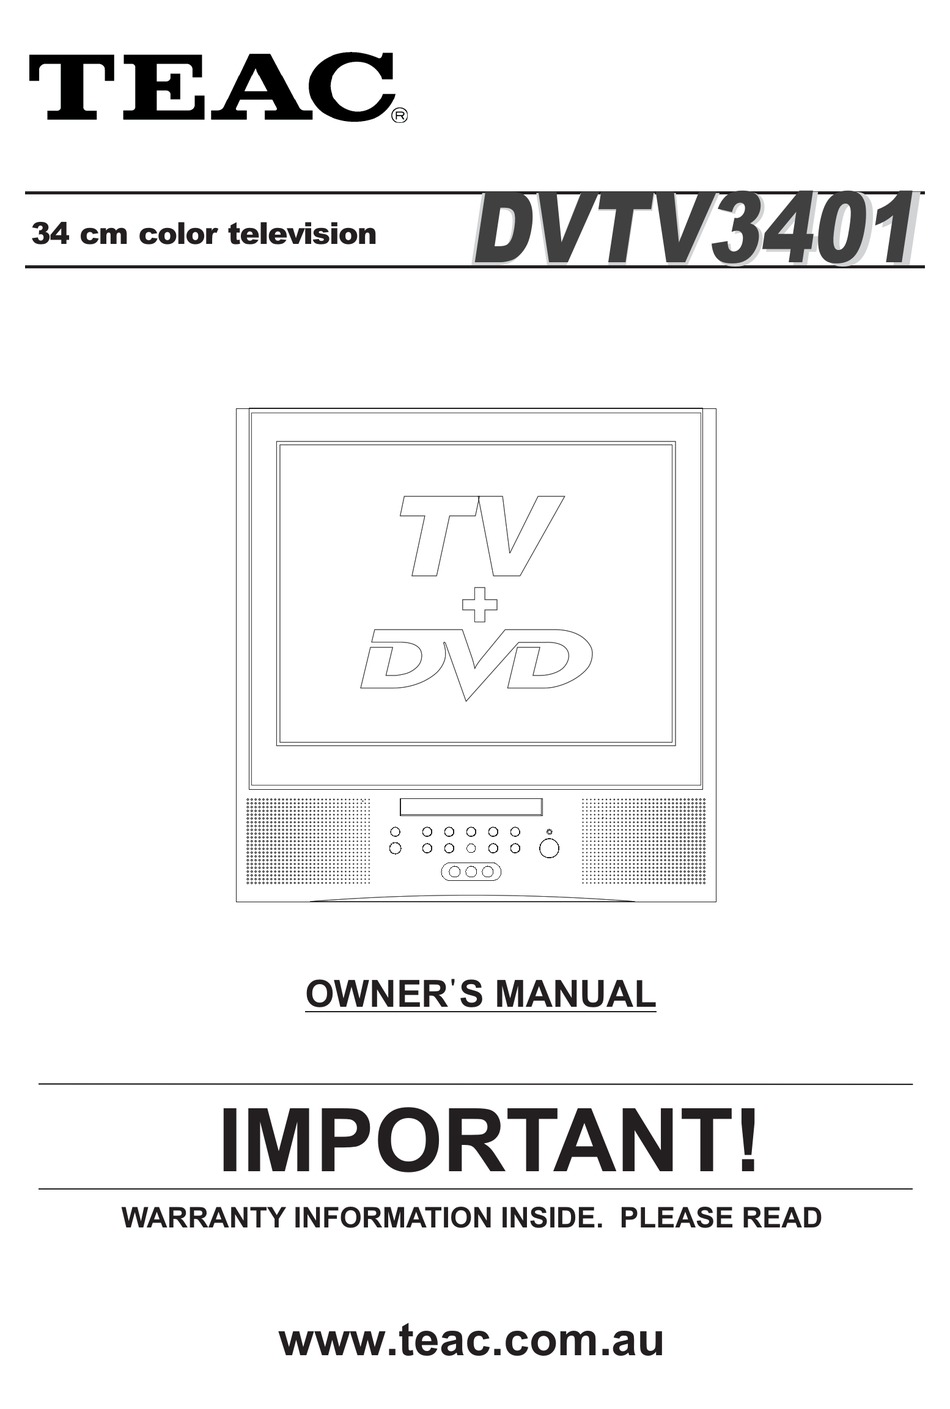 TEAC DVTV3401 OWNER'S MANUAL Pdf Download | ManualsLib